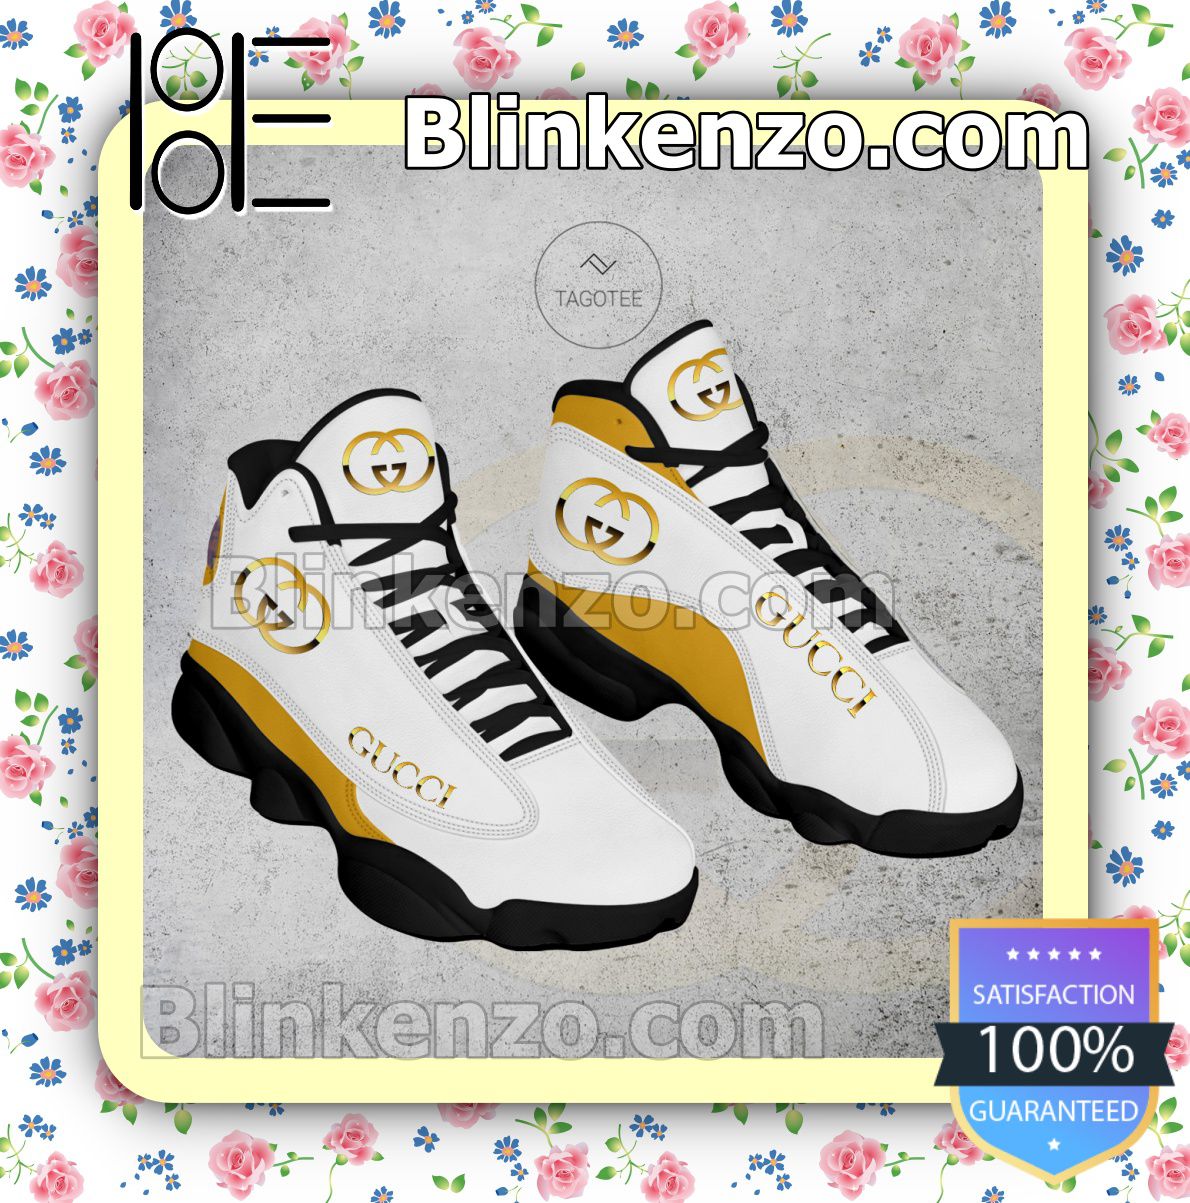 Gucci Brand Air Jordan 13 Retro Sneakers - Blinkenzo